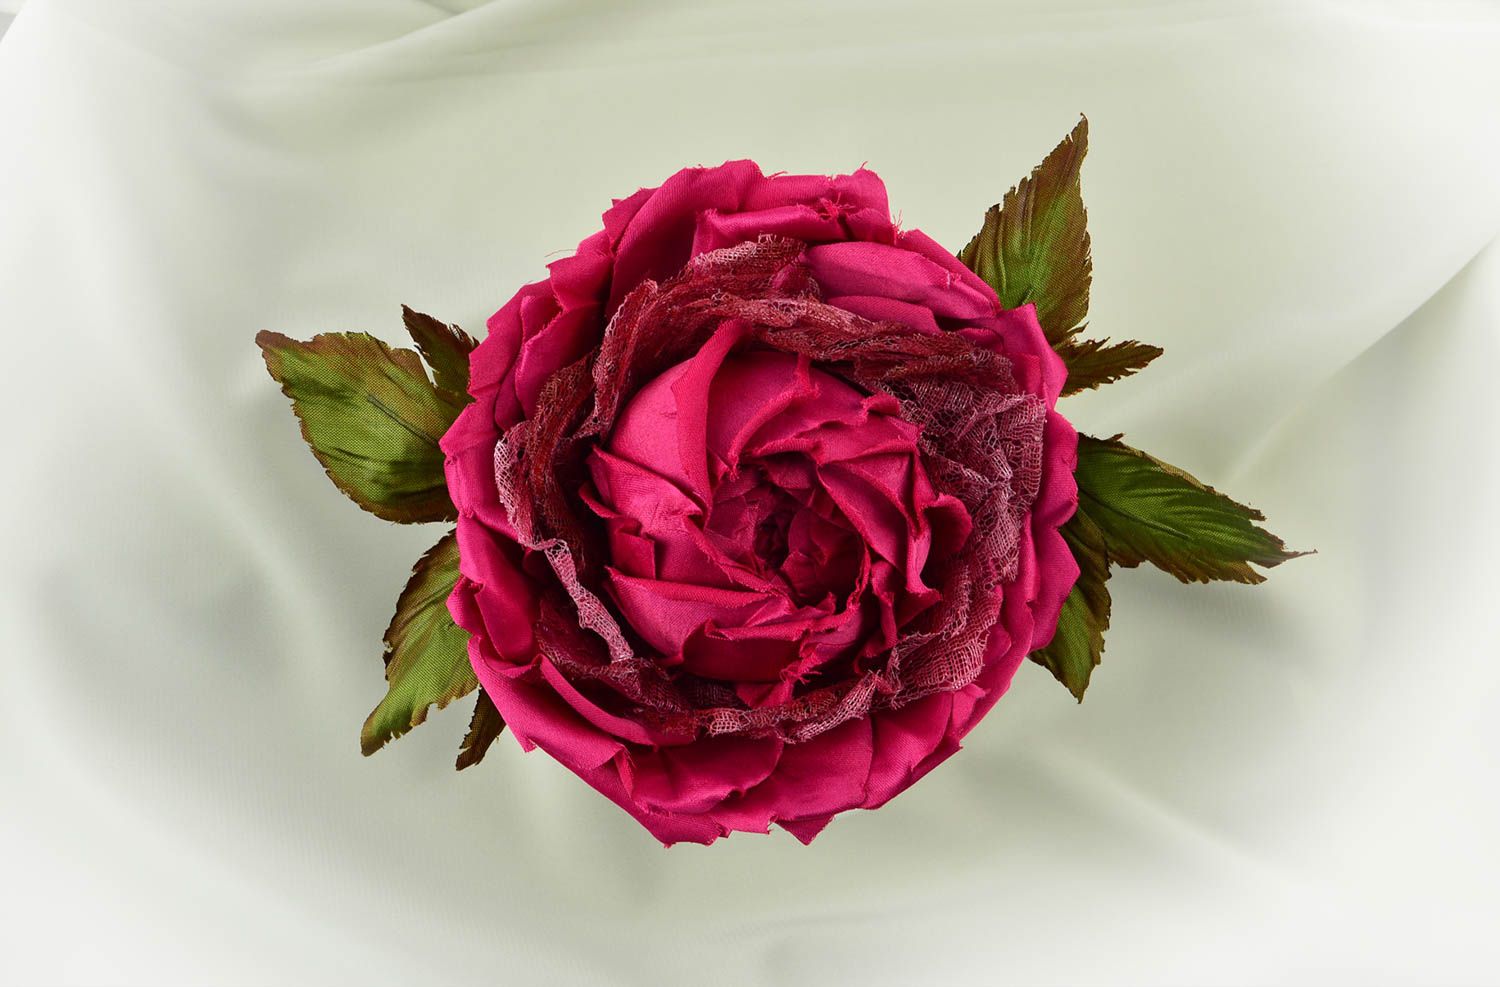 Брошь из шелка хэнд мэйд брошь-заколка пурпурная роза авторская бижутерия фото 1